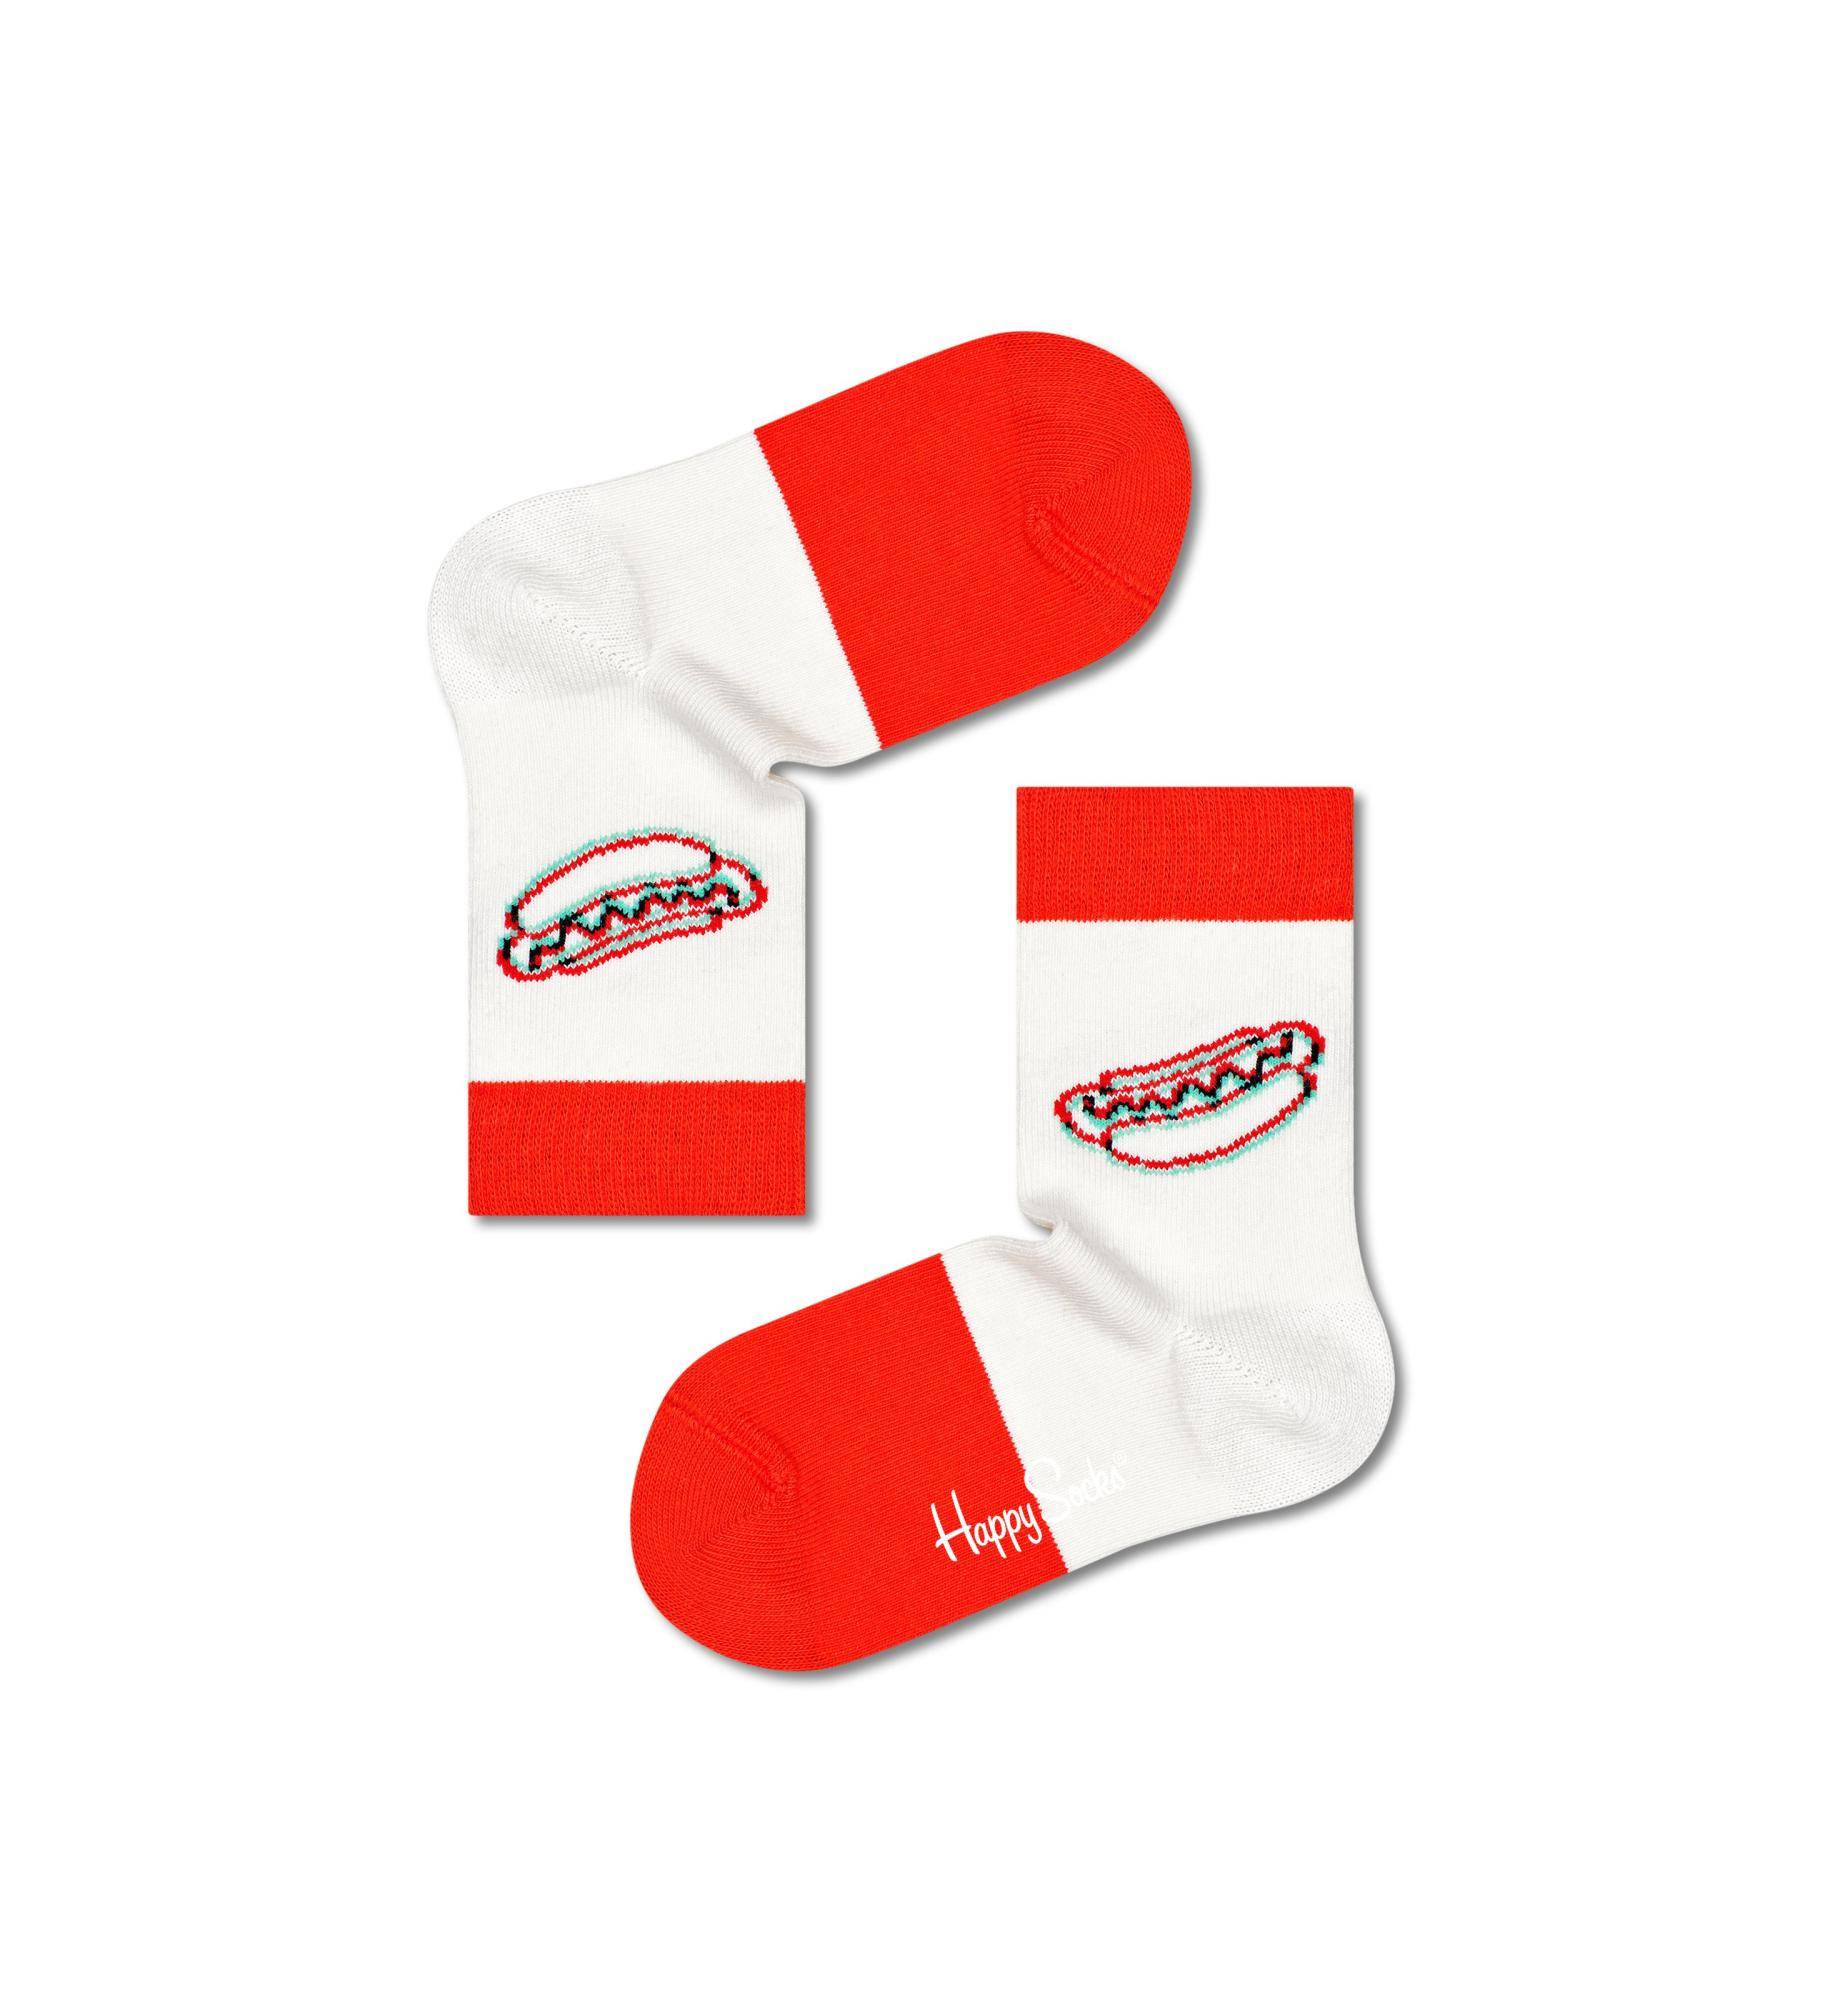 Носки Happy socks Kids 3D Hotdog Sock KHTD01 1300, размер 20 - фото 1